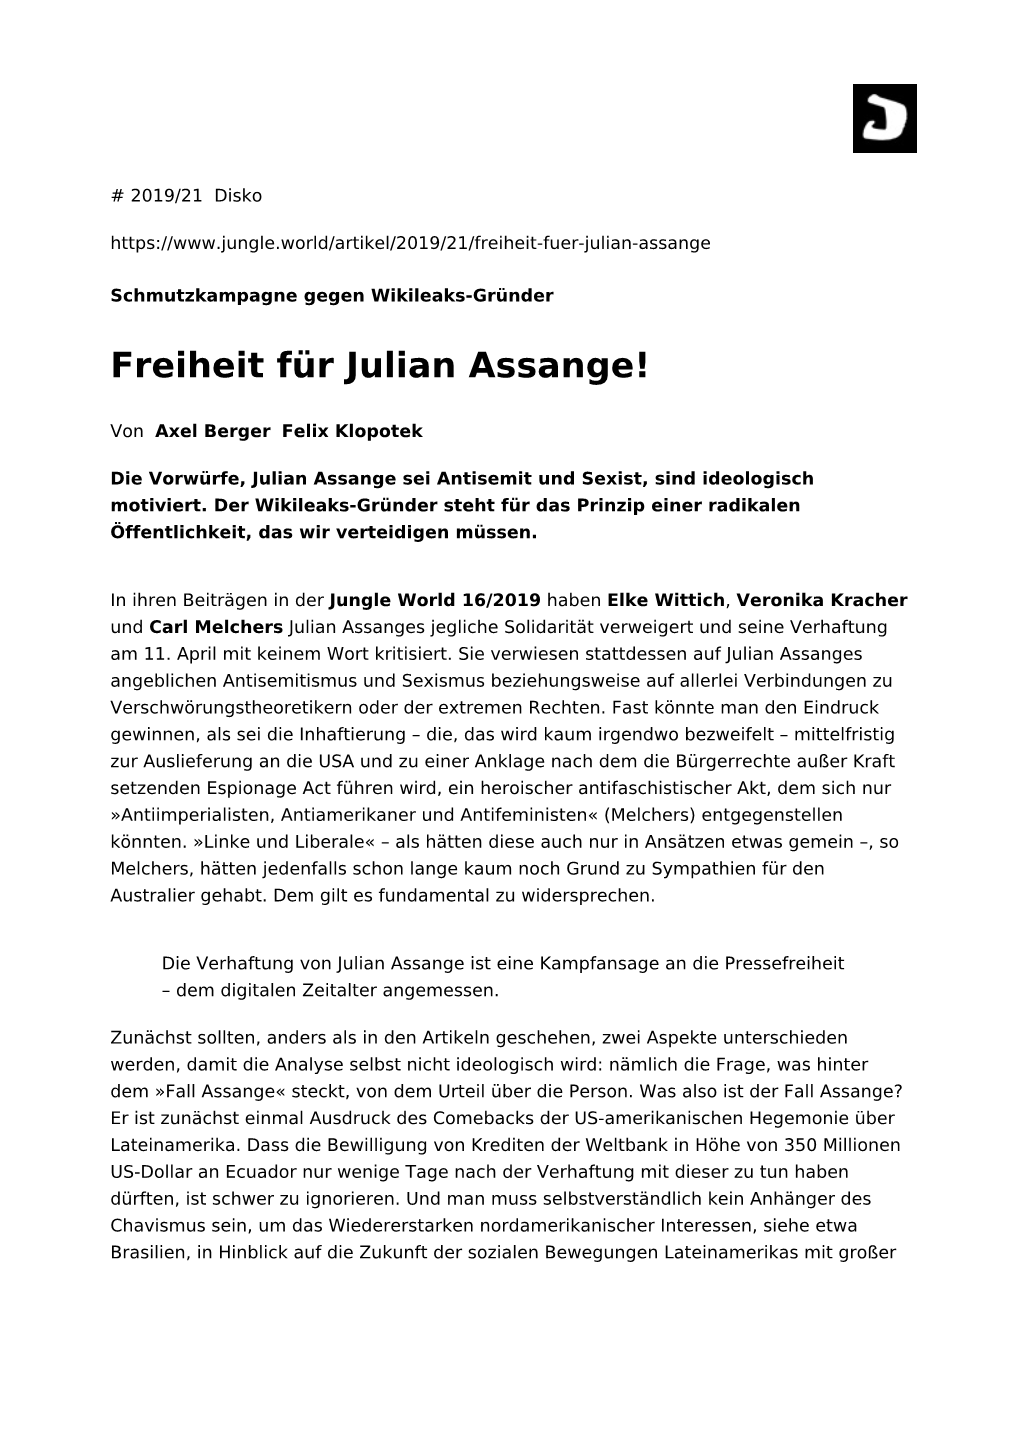 Freiheit Für Julian Assange!